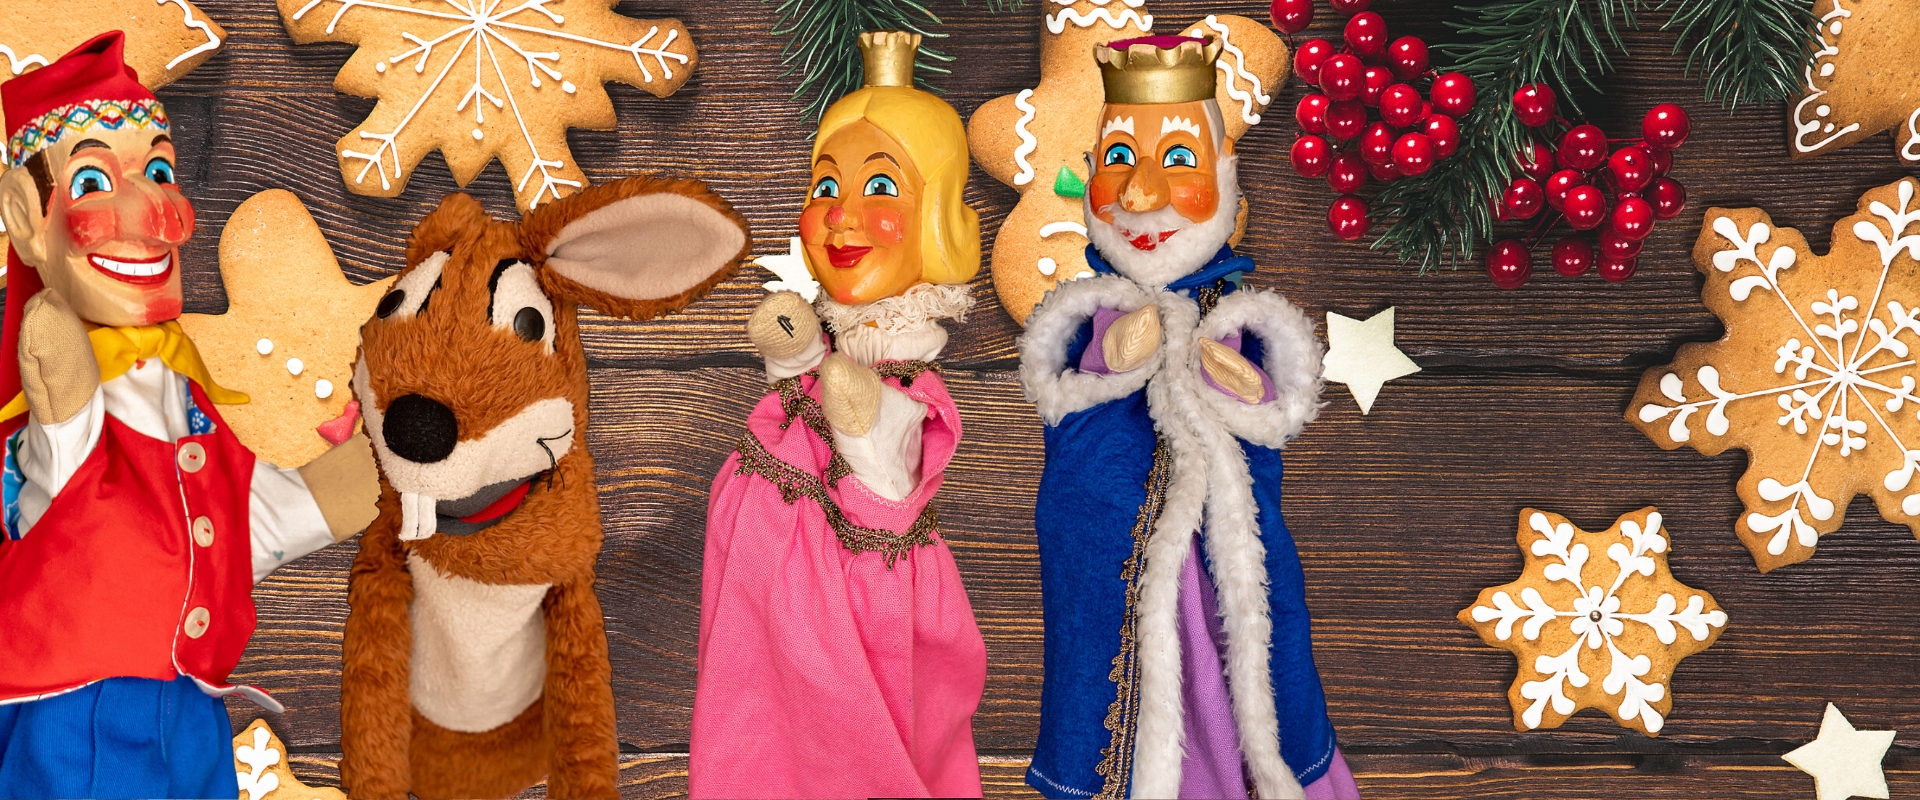 Kasperl, Prinzessin, König und Hase als Handpuppe mit Weihnachtsmotiv.